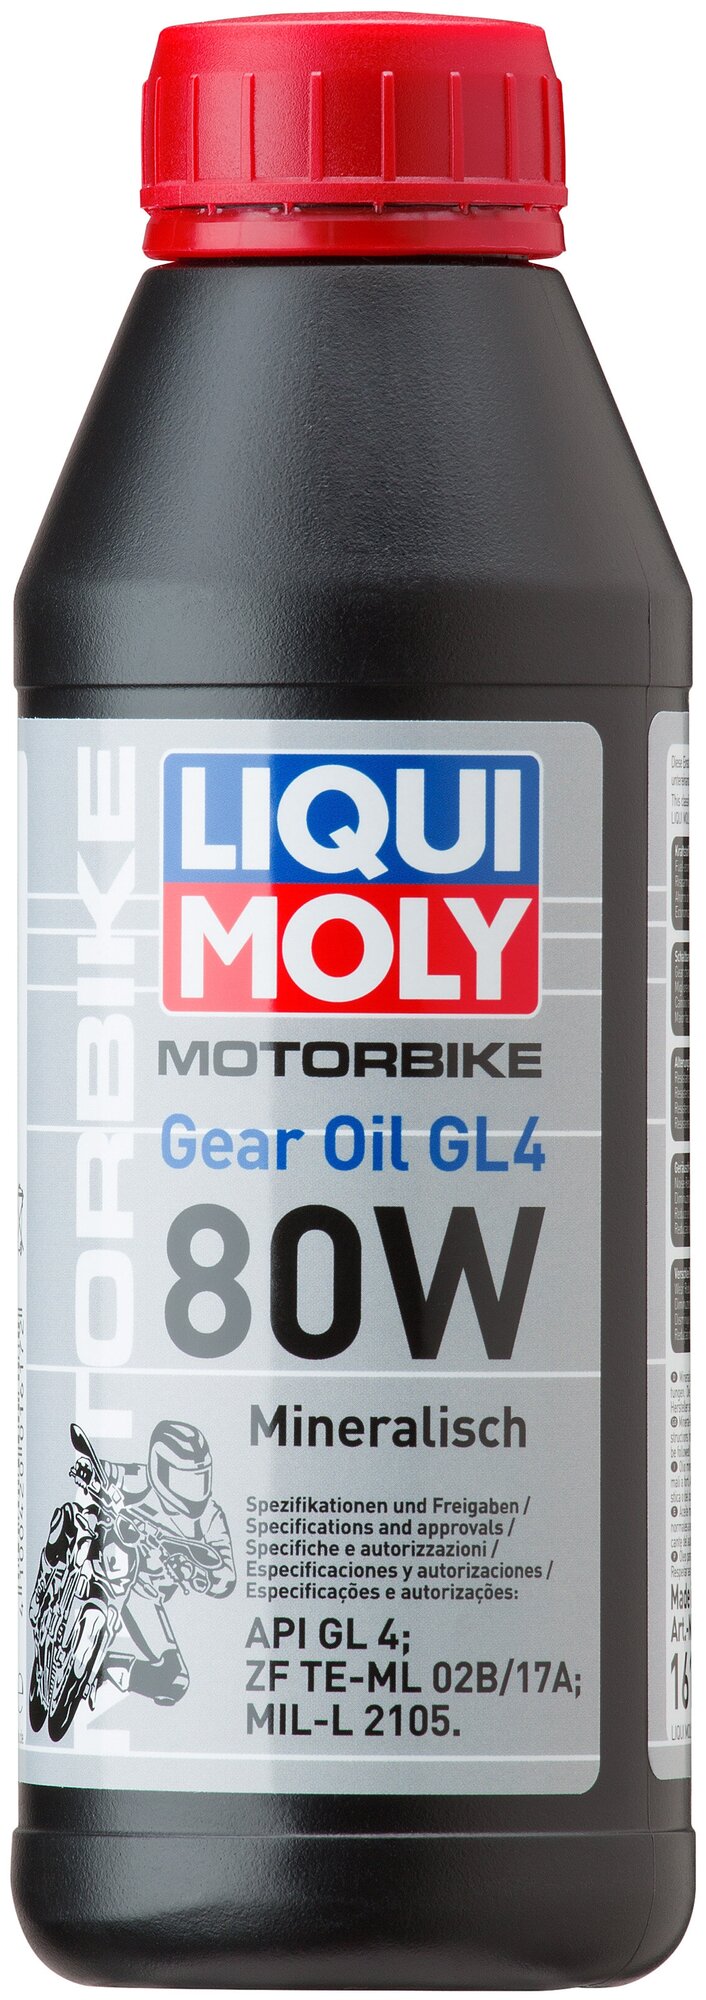 1617 LiquiMoly Минеральное трансмиссионное масло для мотоциклов Motorbike Gear Oil 80W 0,5л